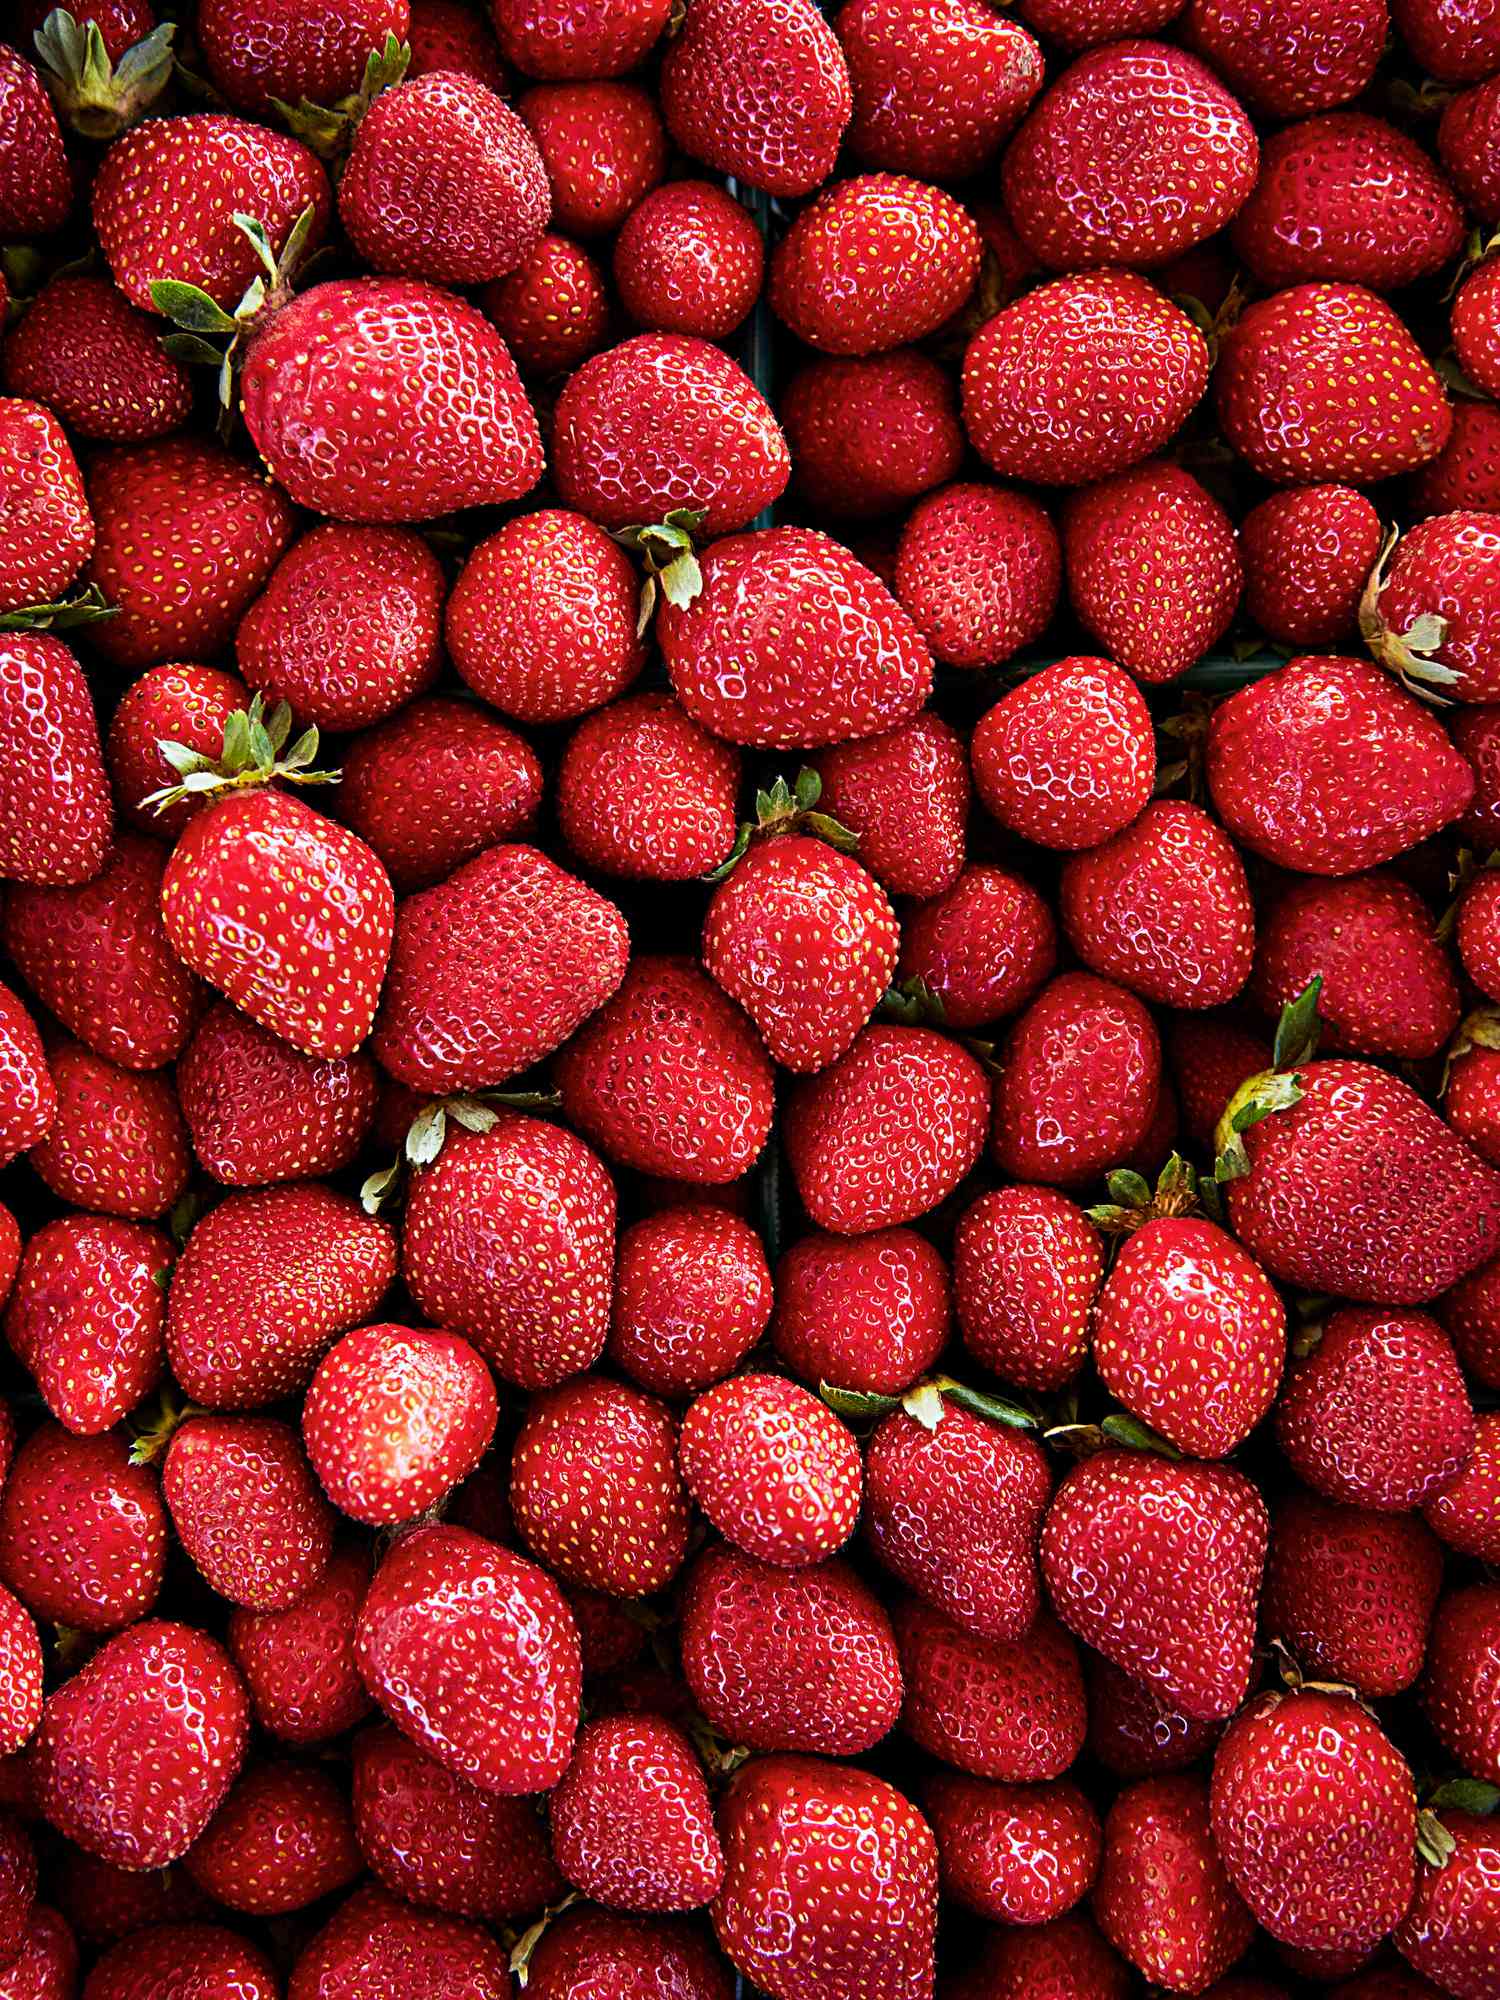 harrys berries strawberries